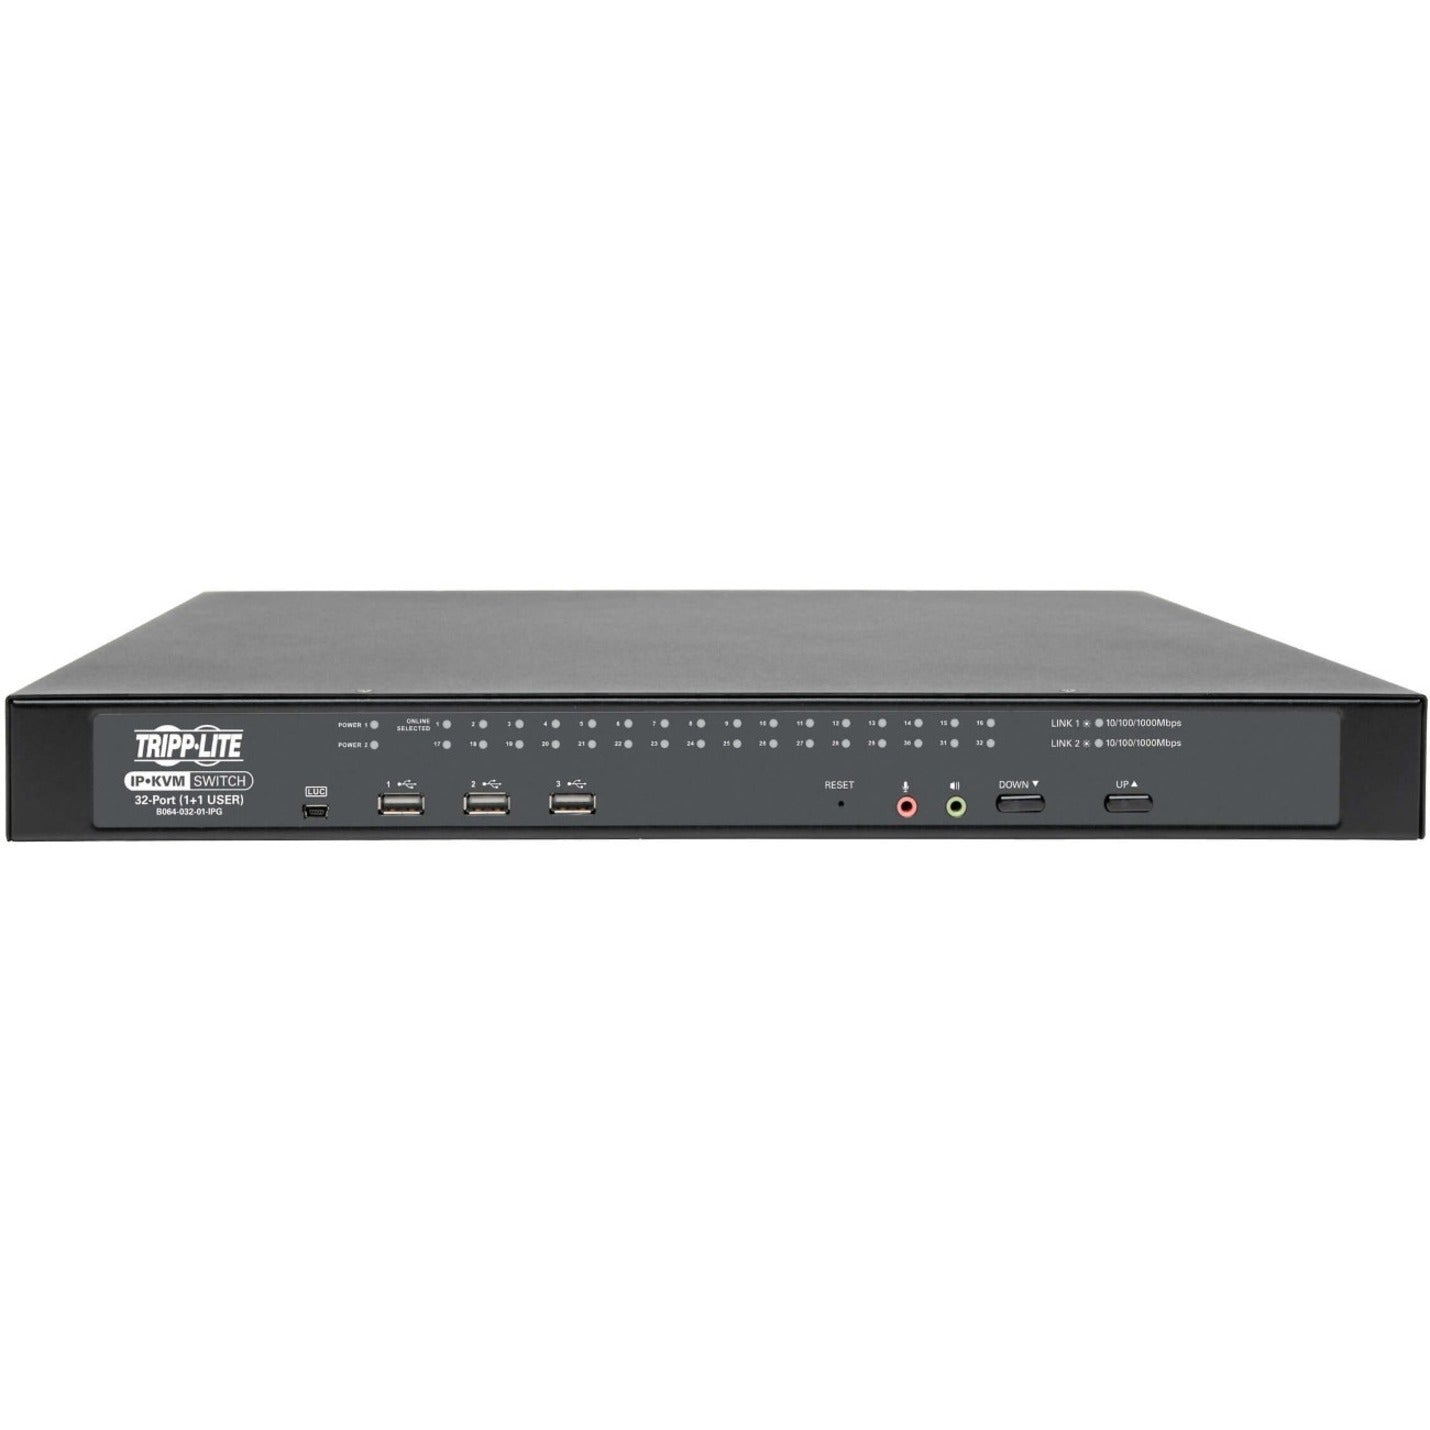 Tripp Lite B064-032-01-IPG 32-Port IP KVM Switch w/ Virtual Media, Maximum Video Resolution 1920 x 1200, 3 Year Limited Warranty